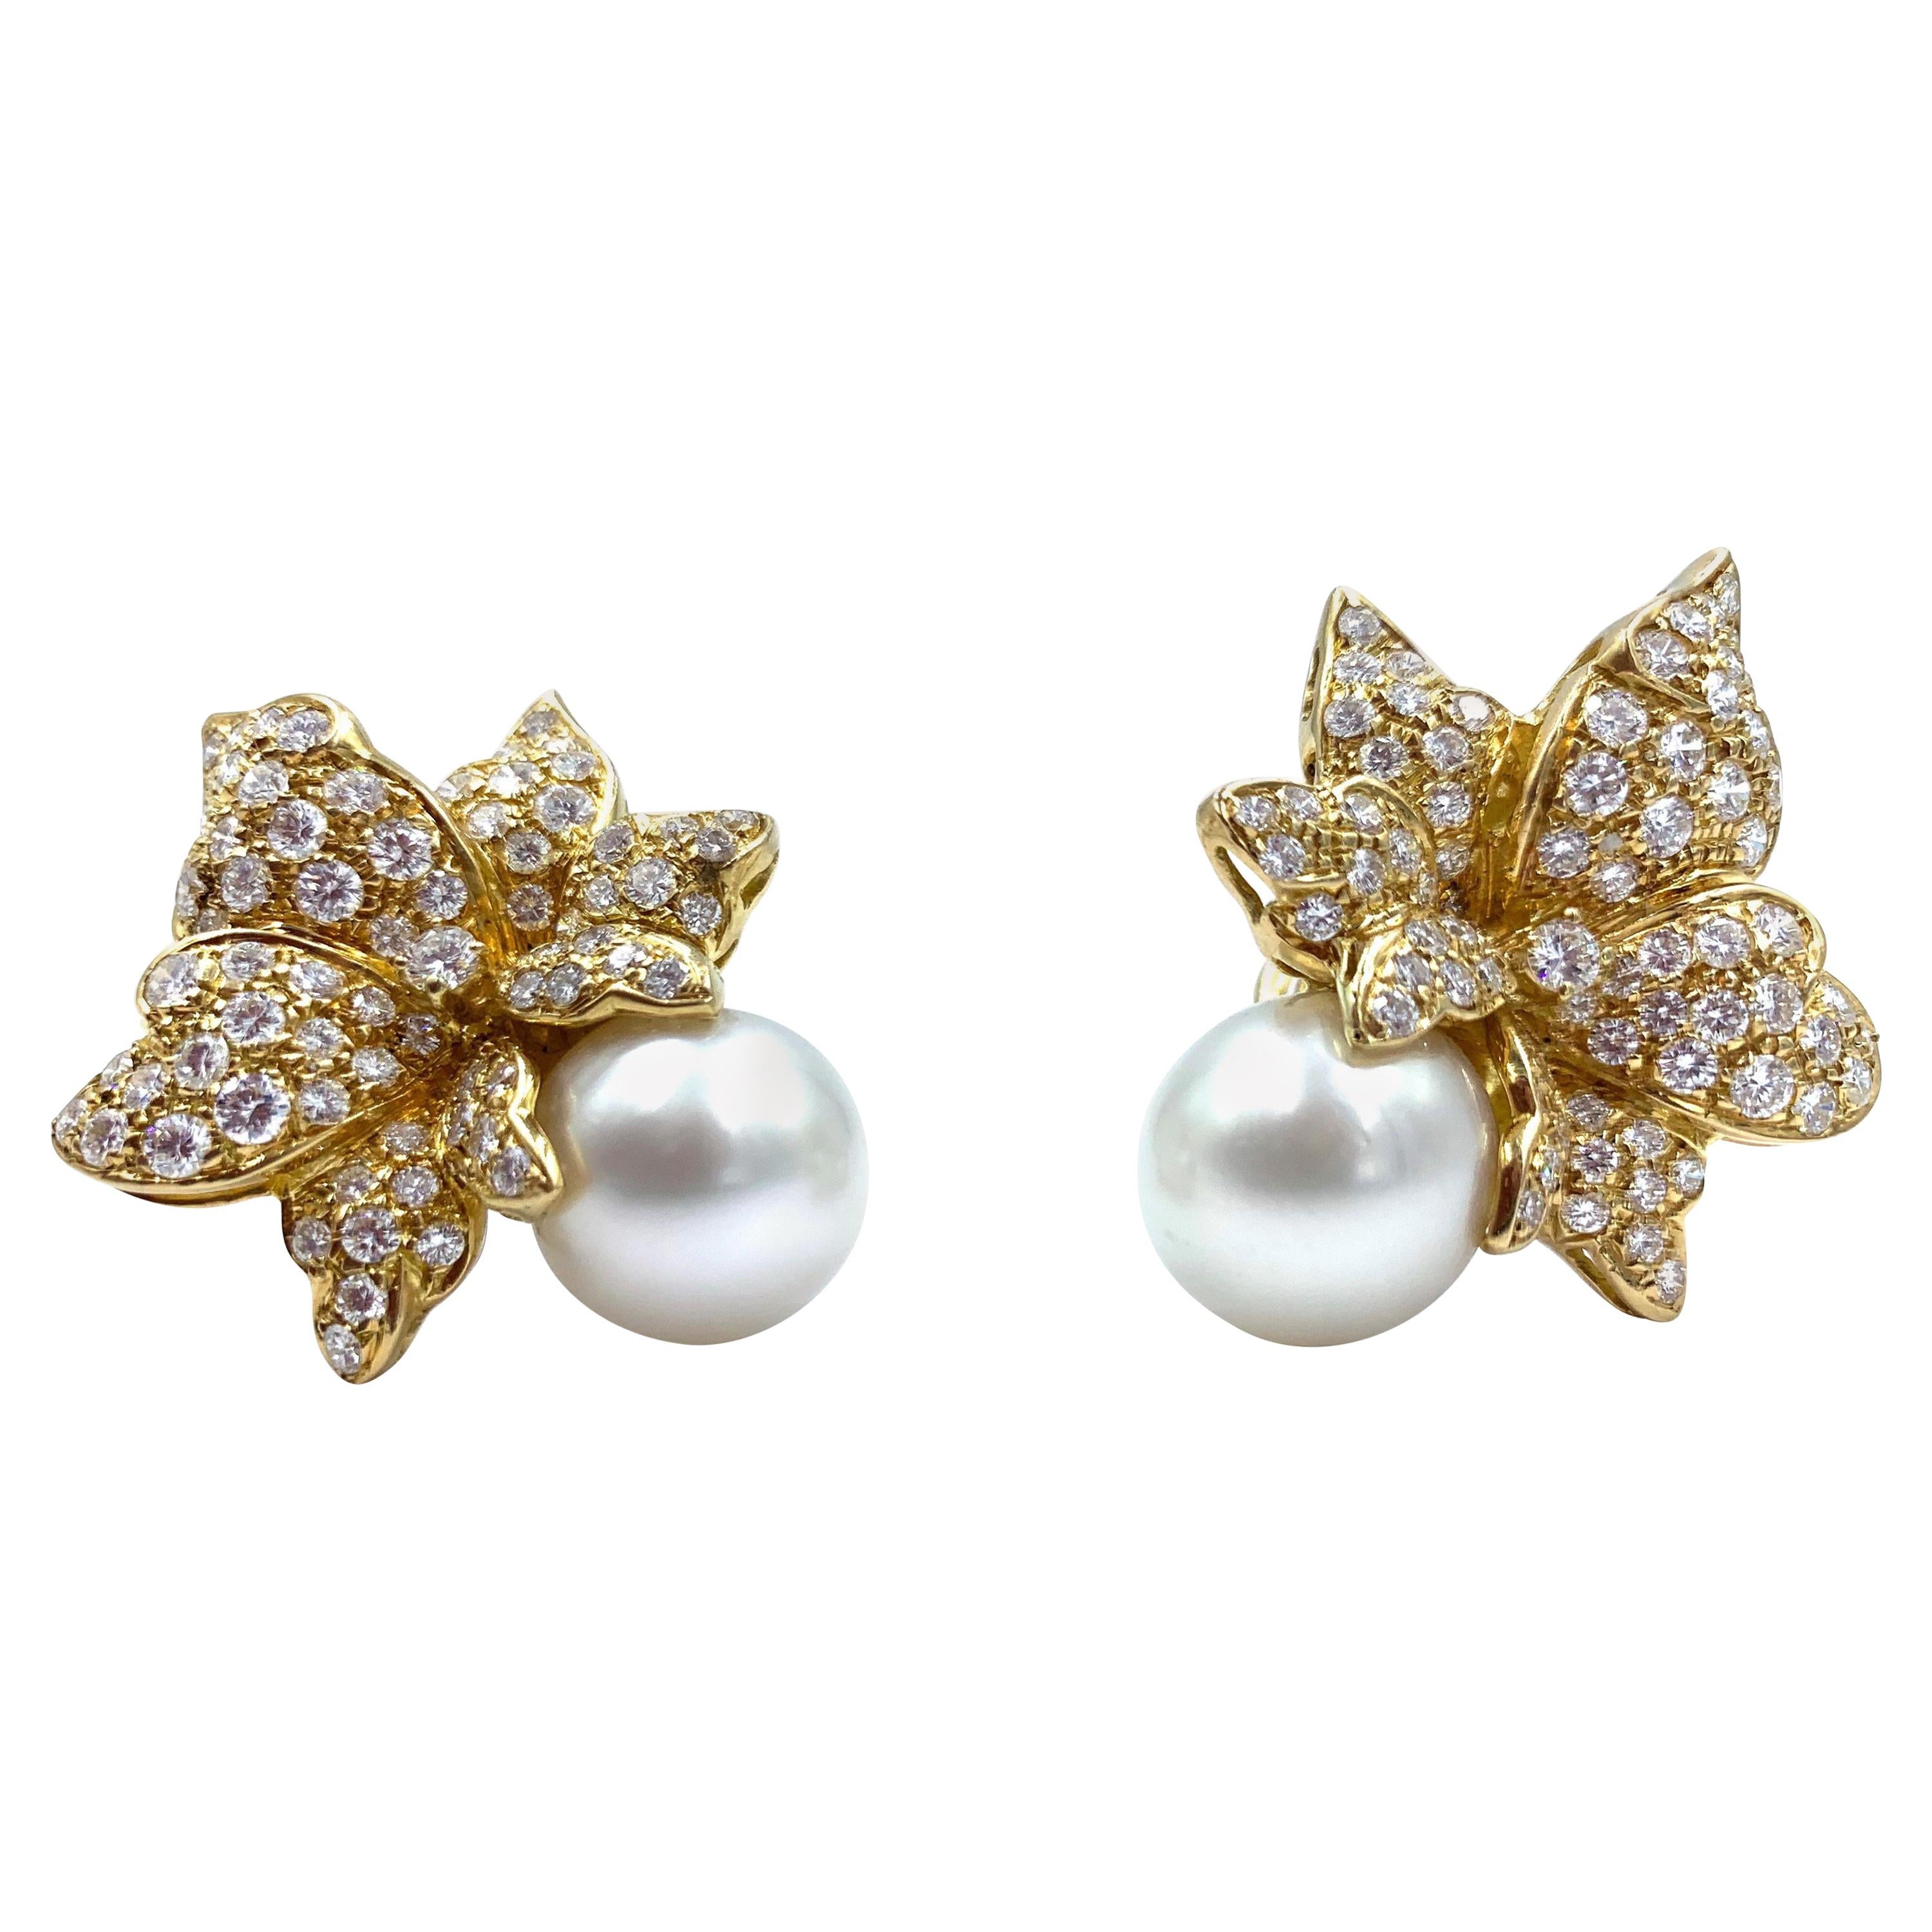 18 Karat Gold und Diamant-Ohrringe in Blumenform mit riesiger Südseeperle